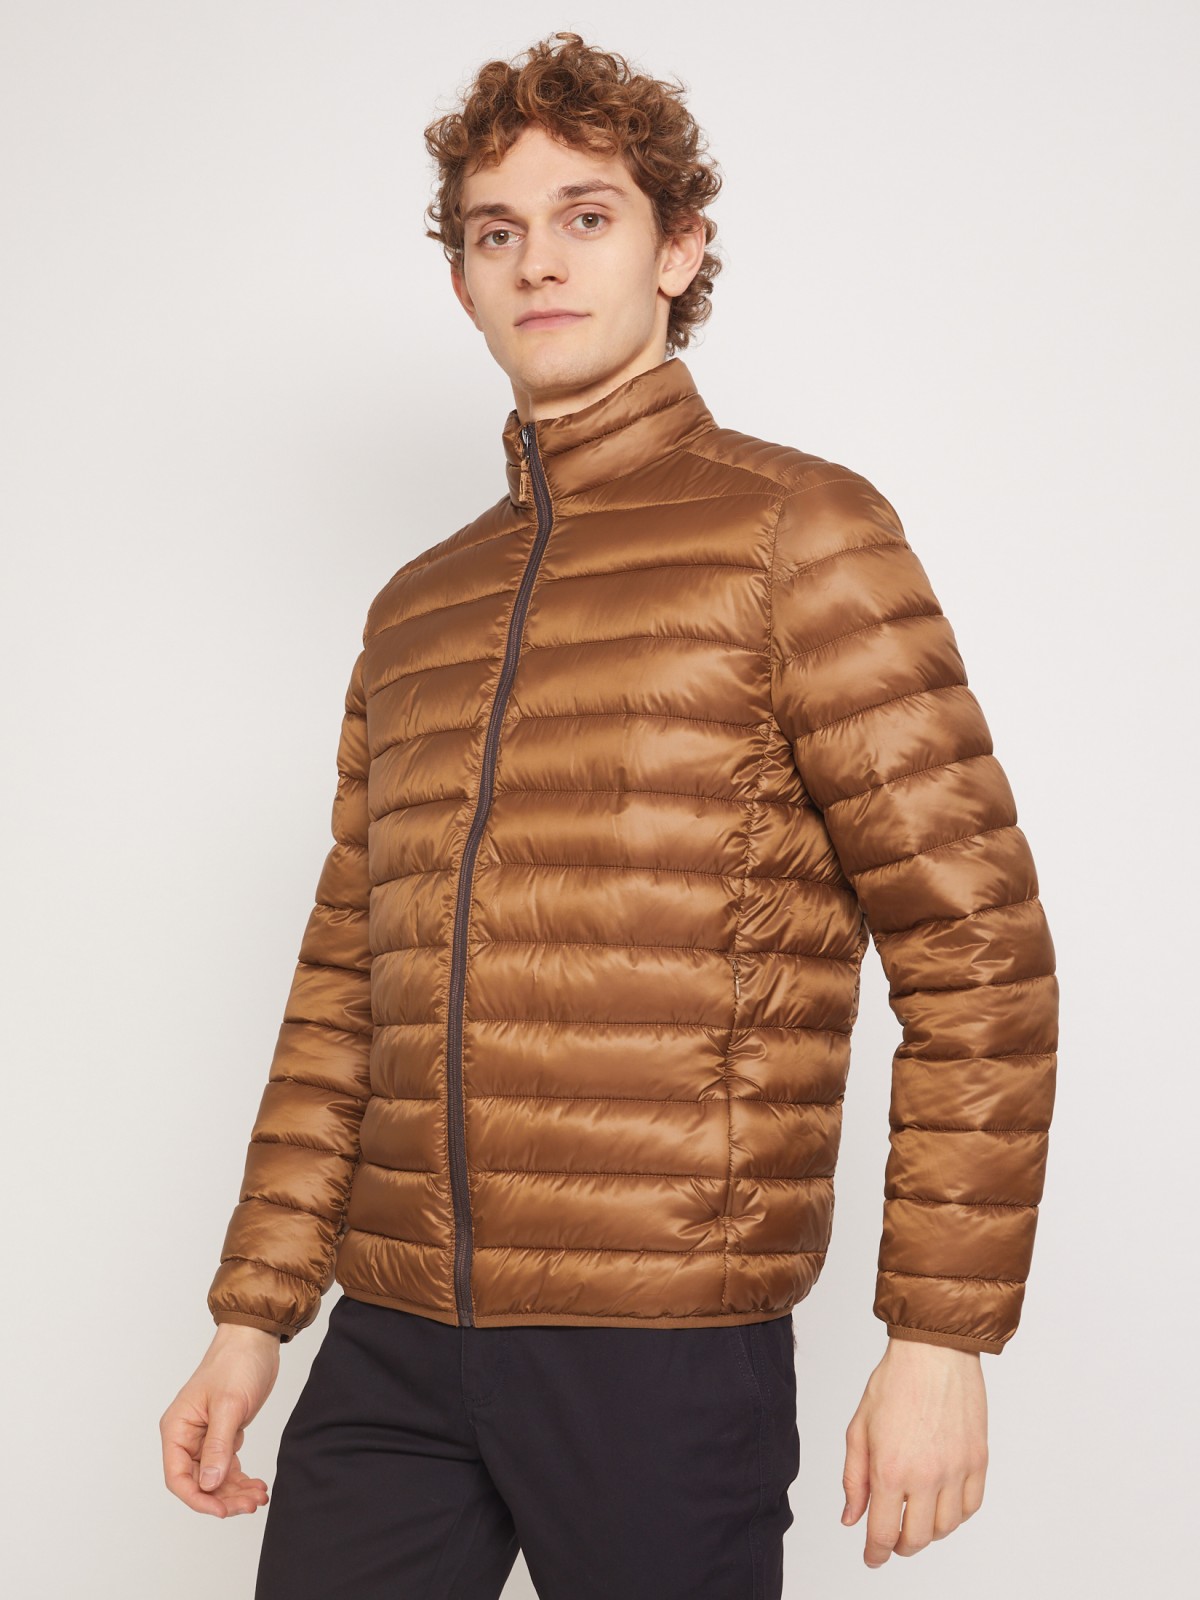 Ультралёгкая стёганая куртка с воротником-стойкой zolla 011335102214, цвет горчичный, размер S - фото 4